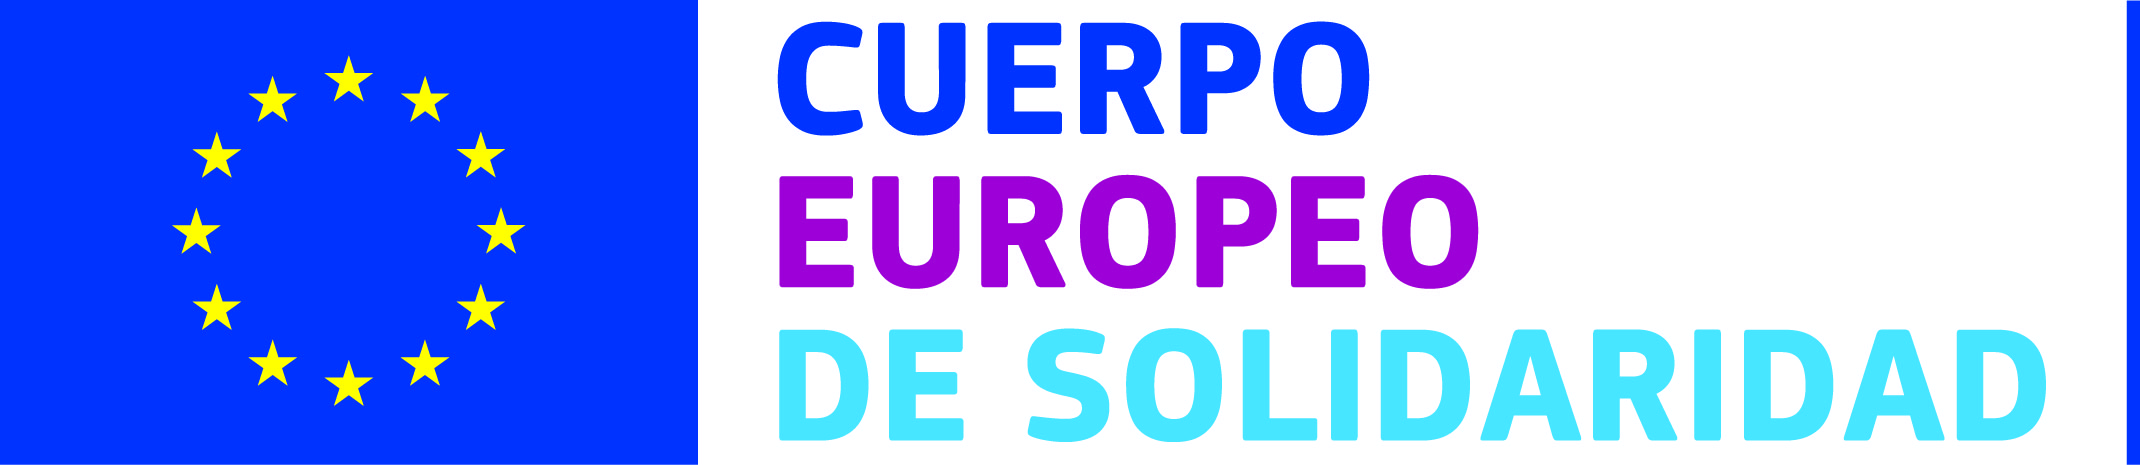 Logo_Cuerpo_Europeo_de_Solidaridad.jpg